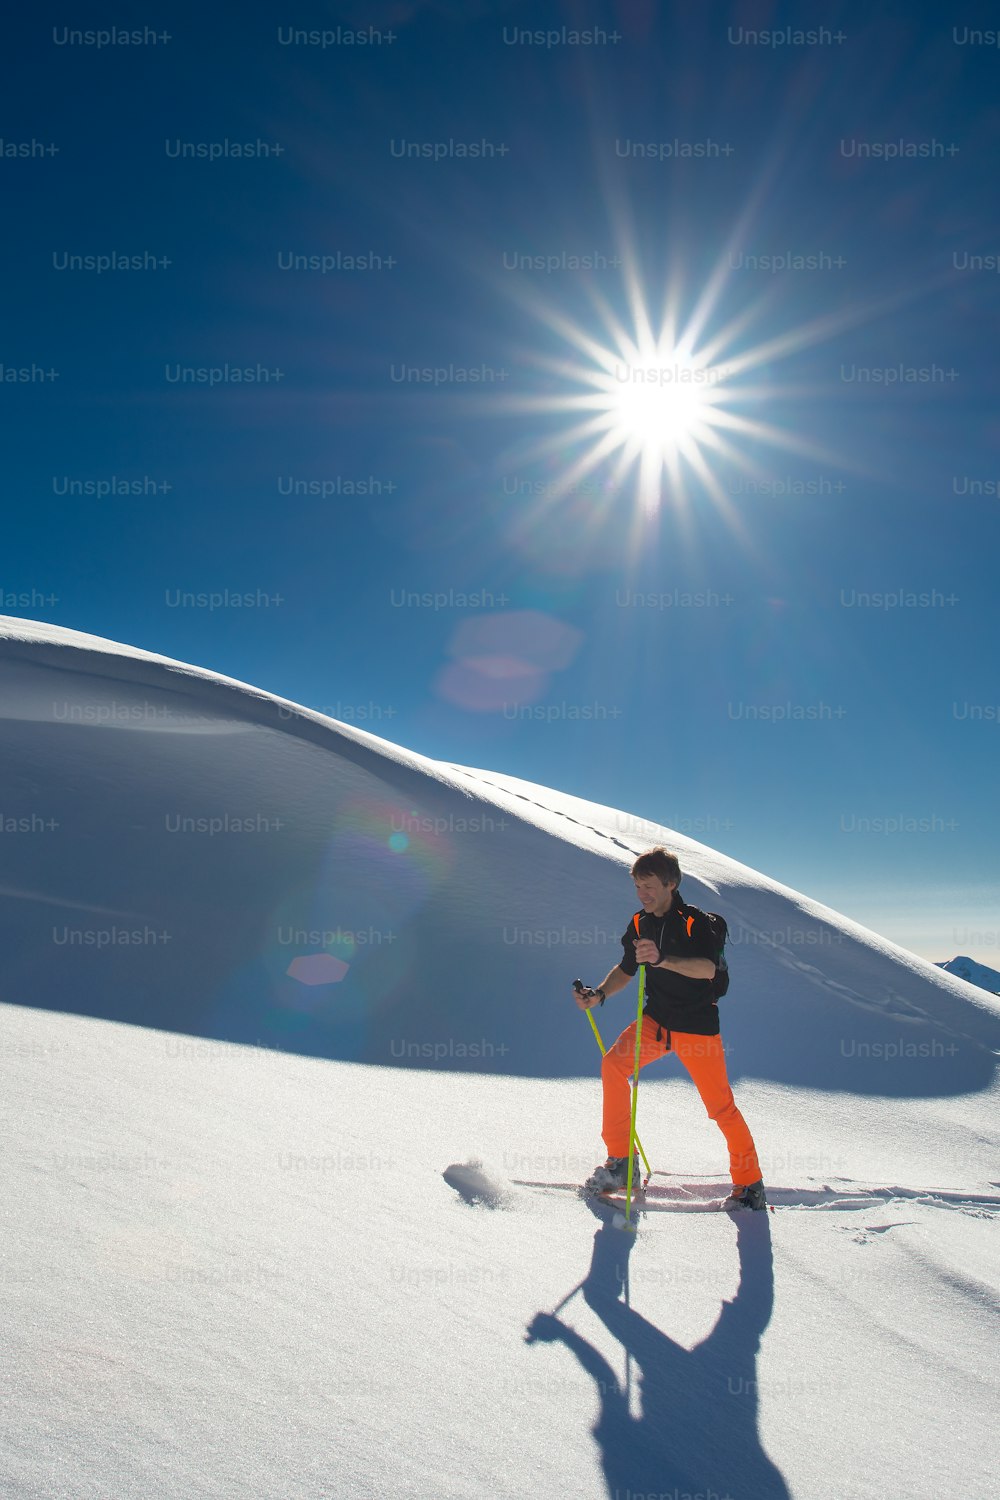 Un skieur alpin grimpe sur des skis et des peaux de phoque dans la neige fraîche par une journée ensoleillée